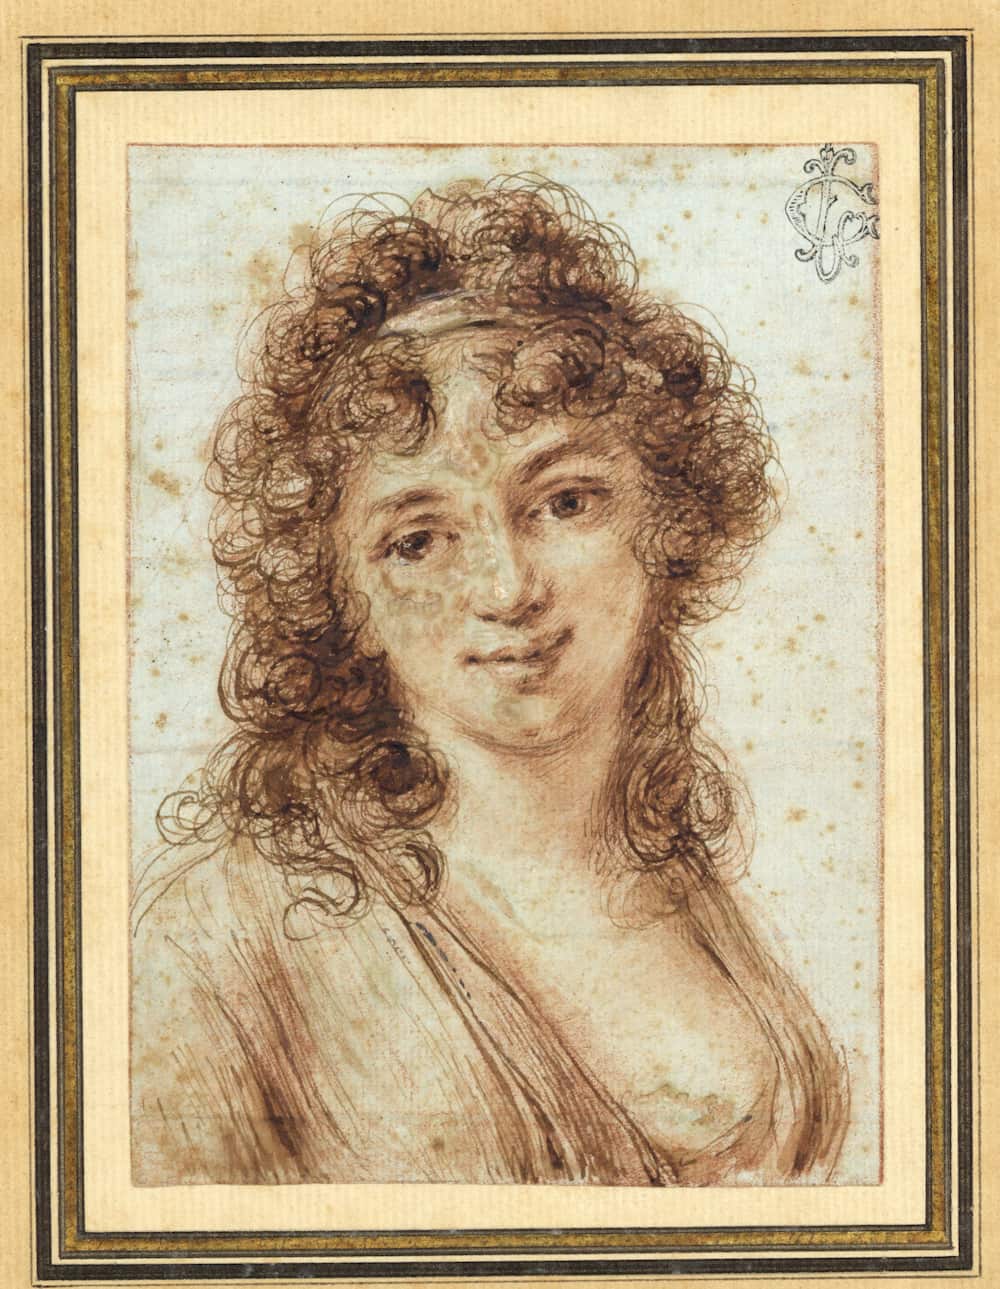 Dominique VIVANT DENON, Portrait of Isabella Teotochi Albrizzi